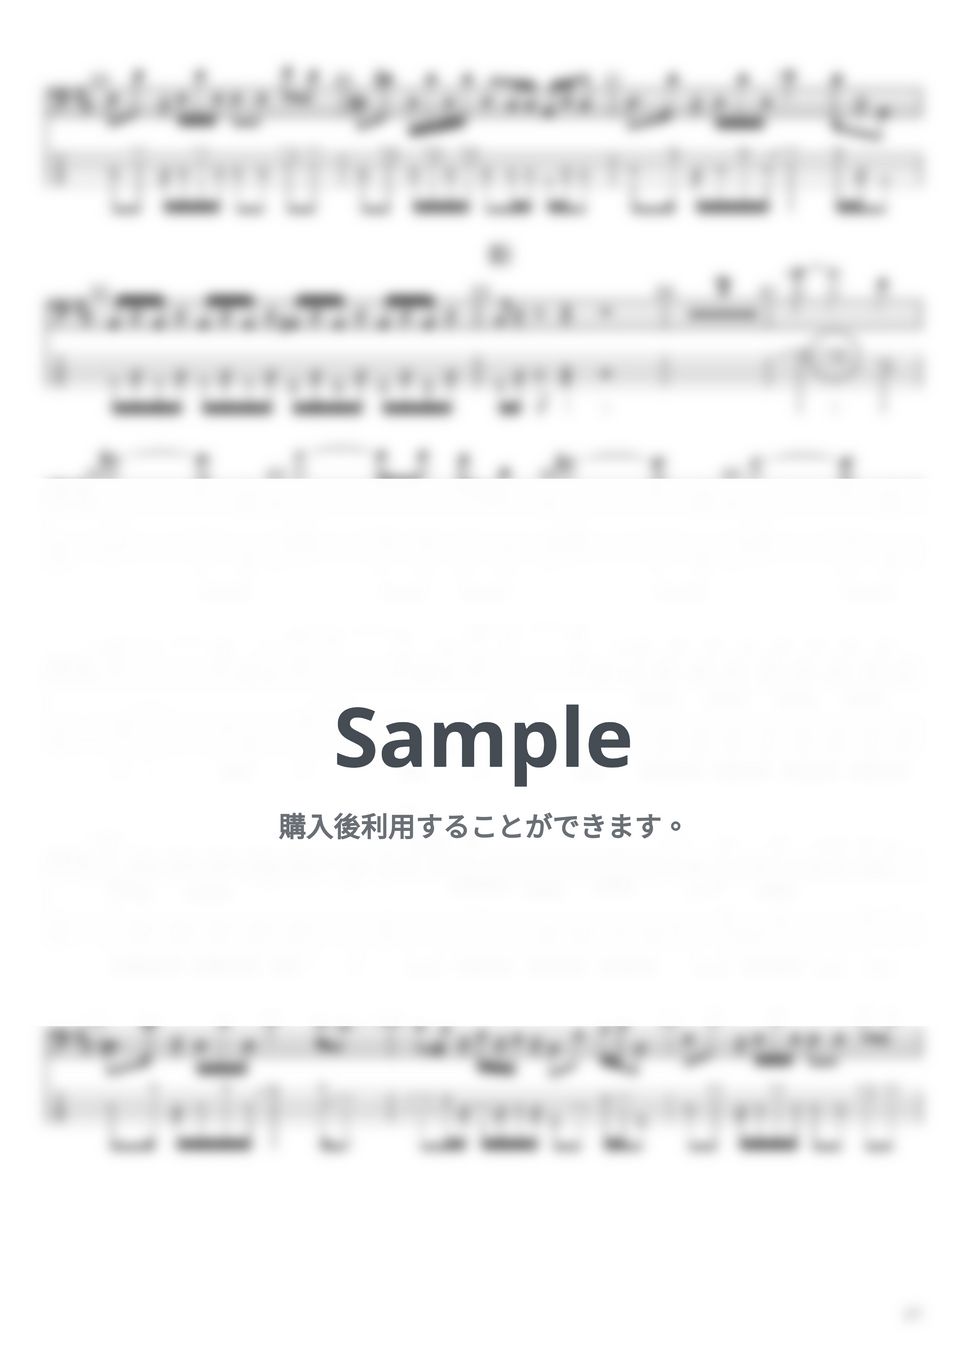 SEKAI NO OWARI - スターライトパレード(4弦ver) by たぶべー